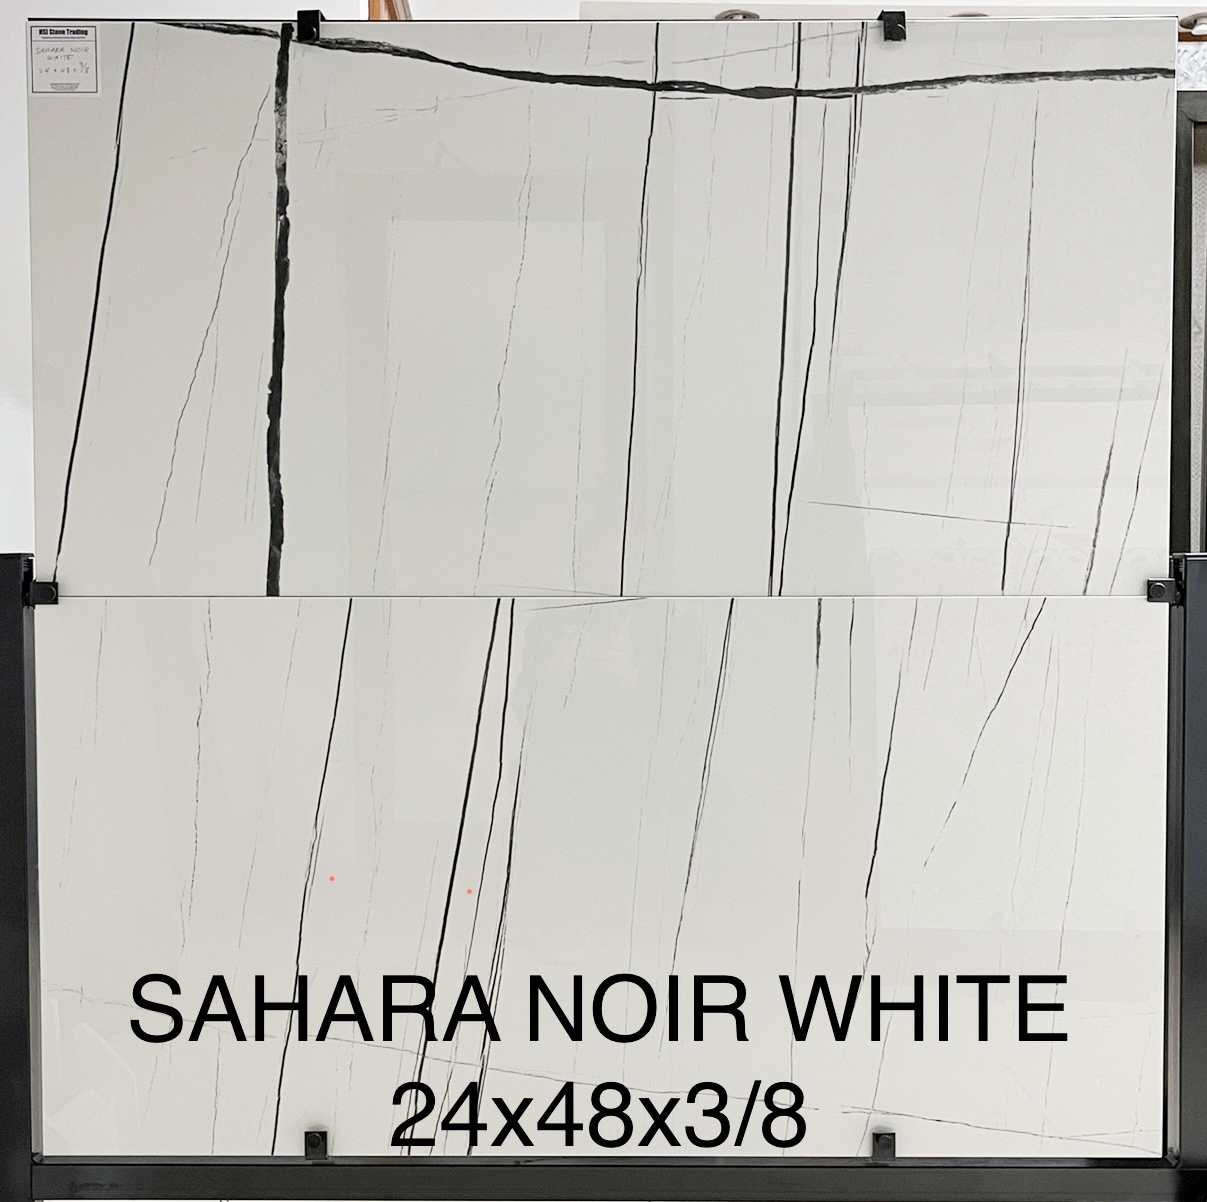 Sahara Noir WHITE